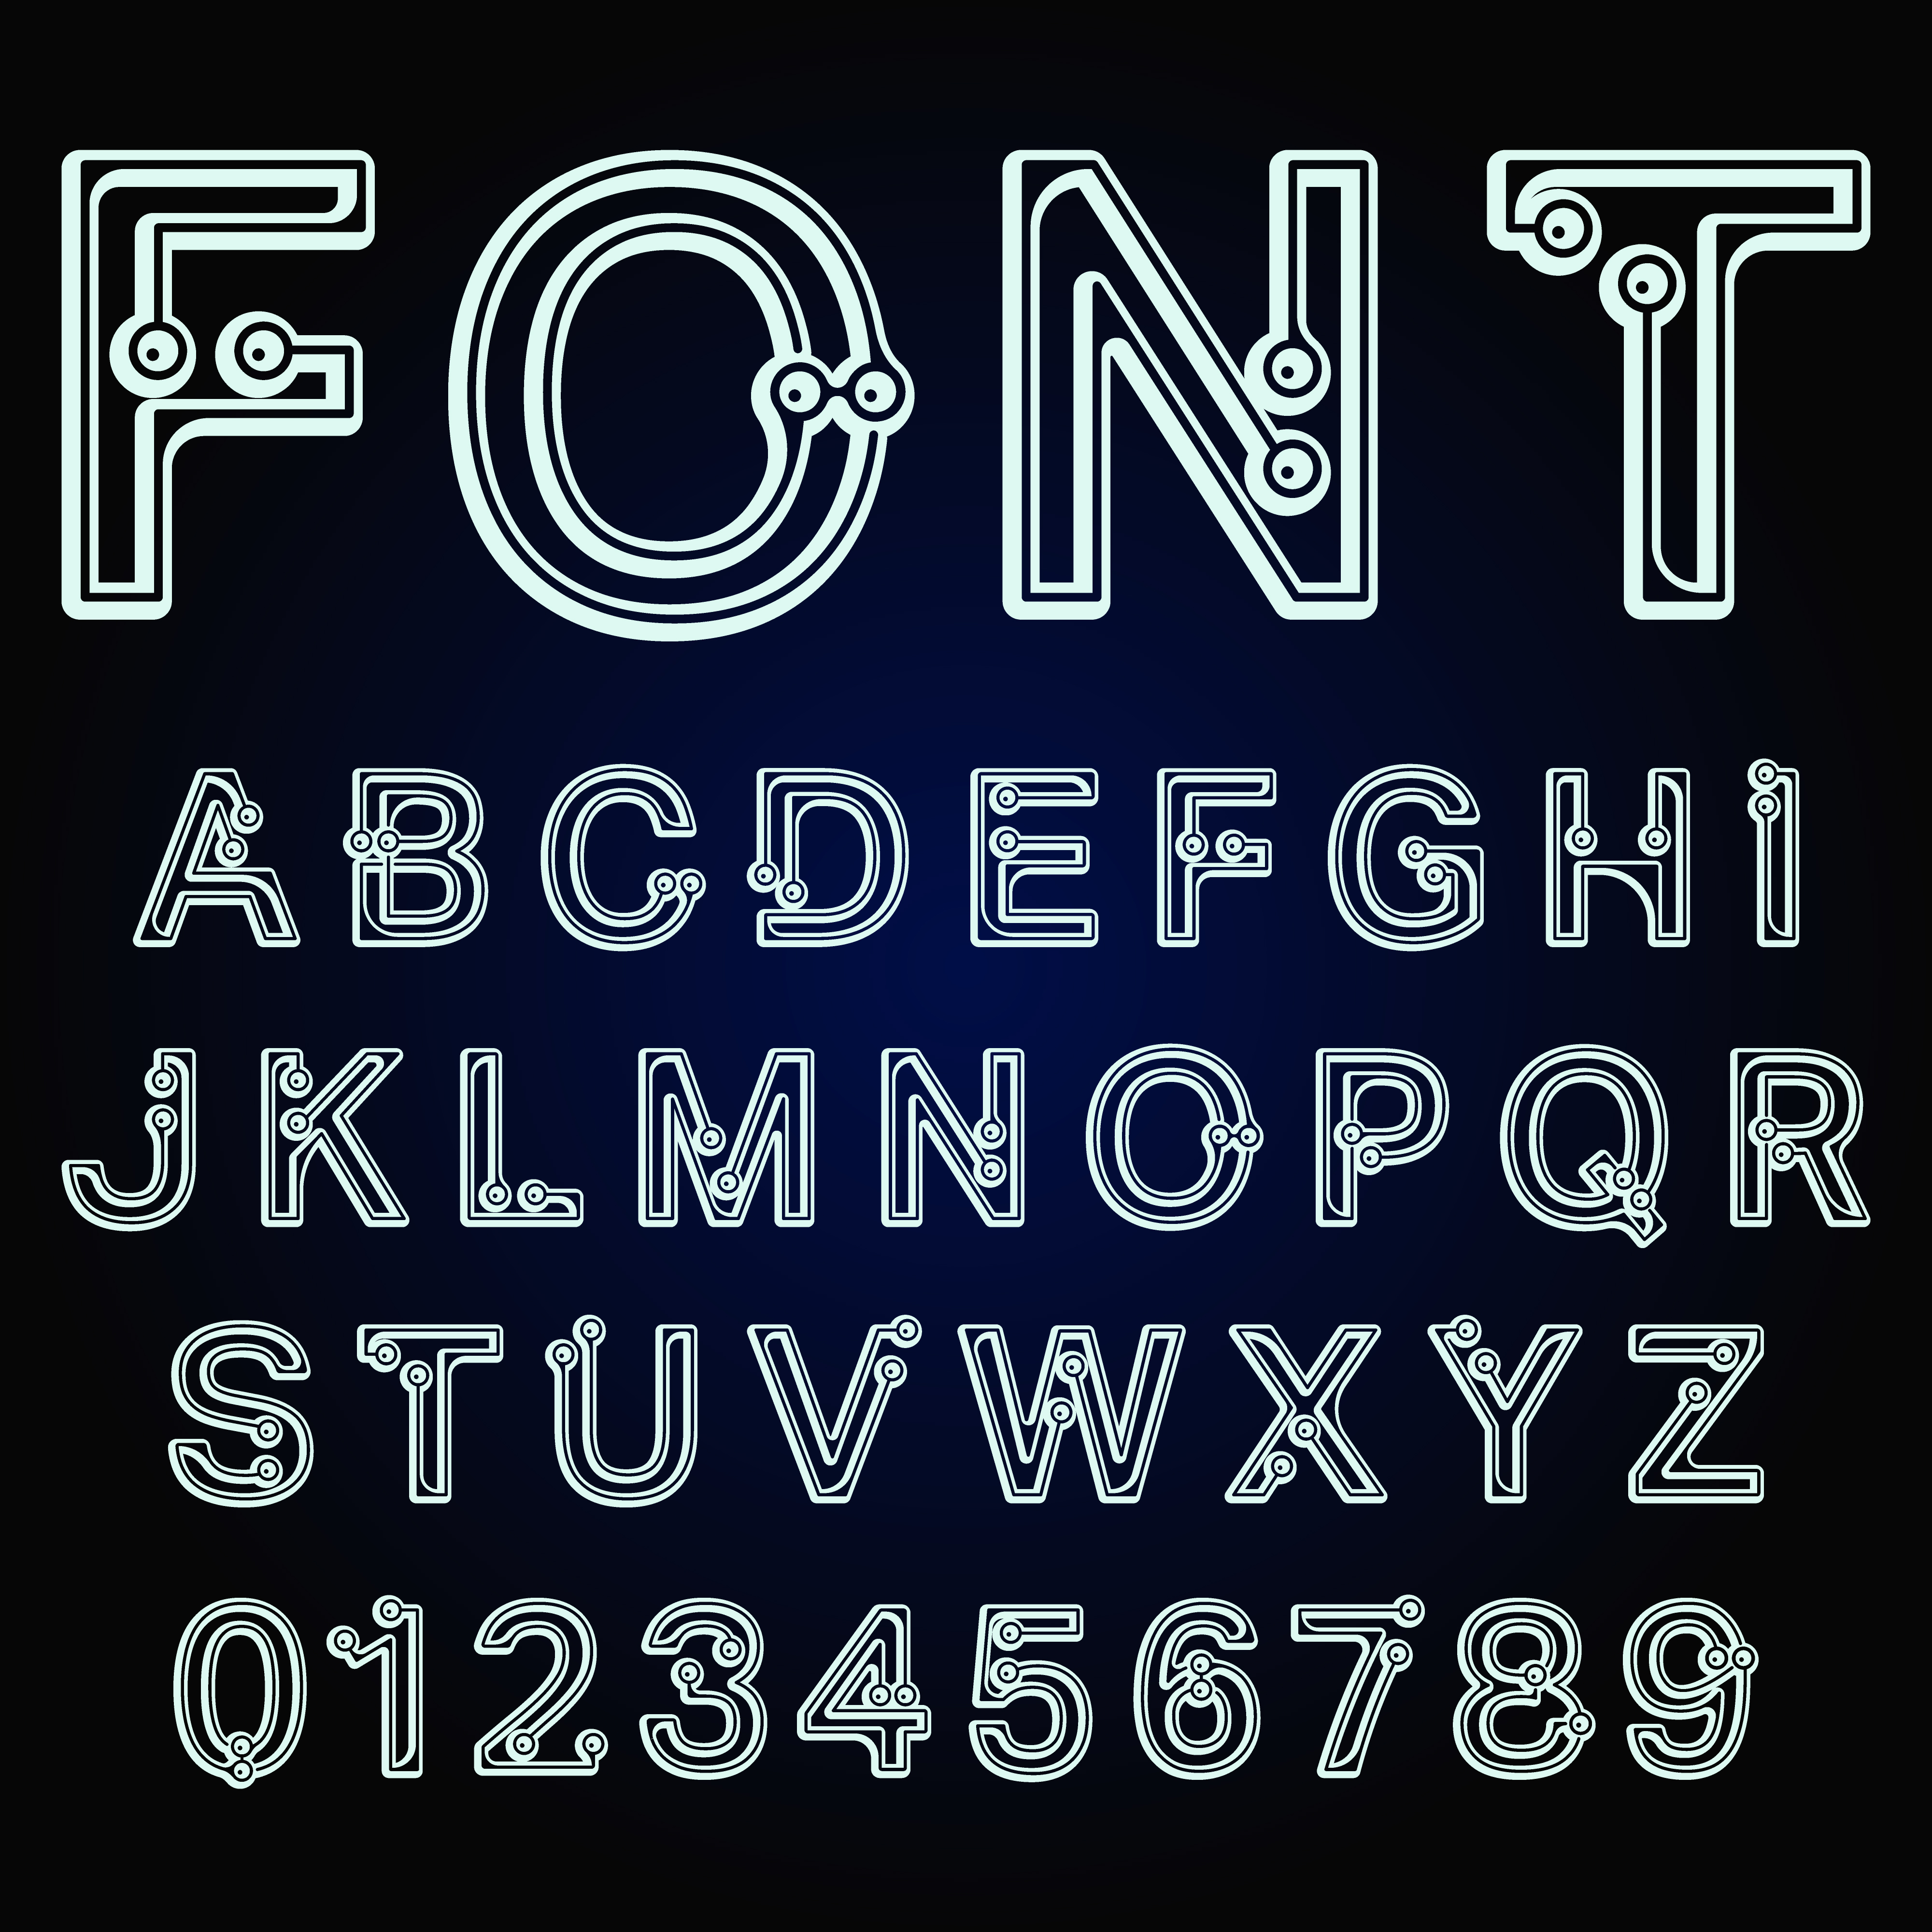 Dots font alphabet 680690 Download Free Vectors, Clipart